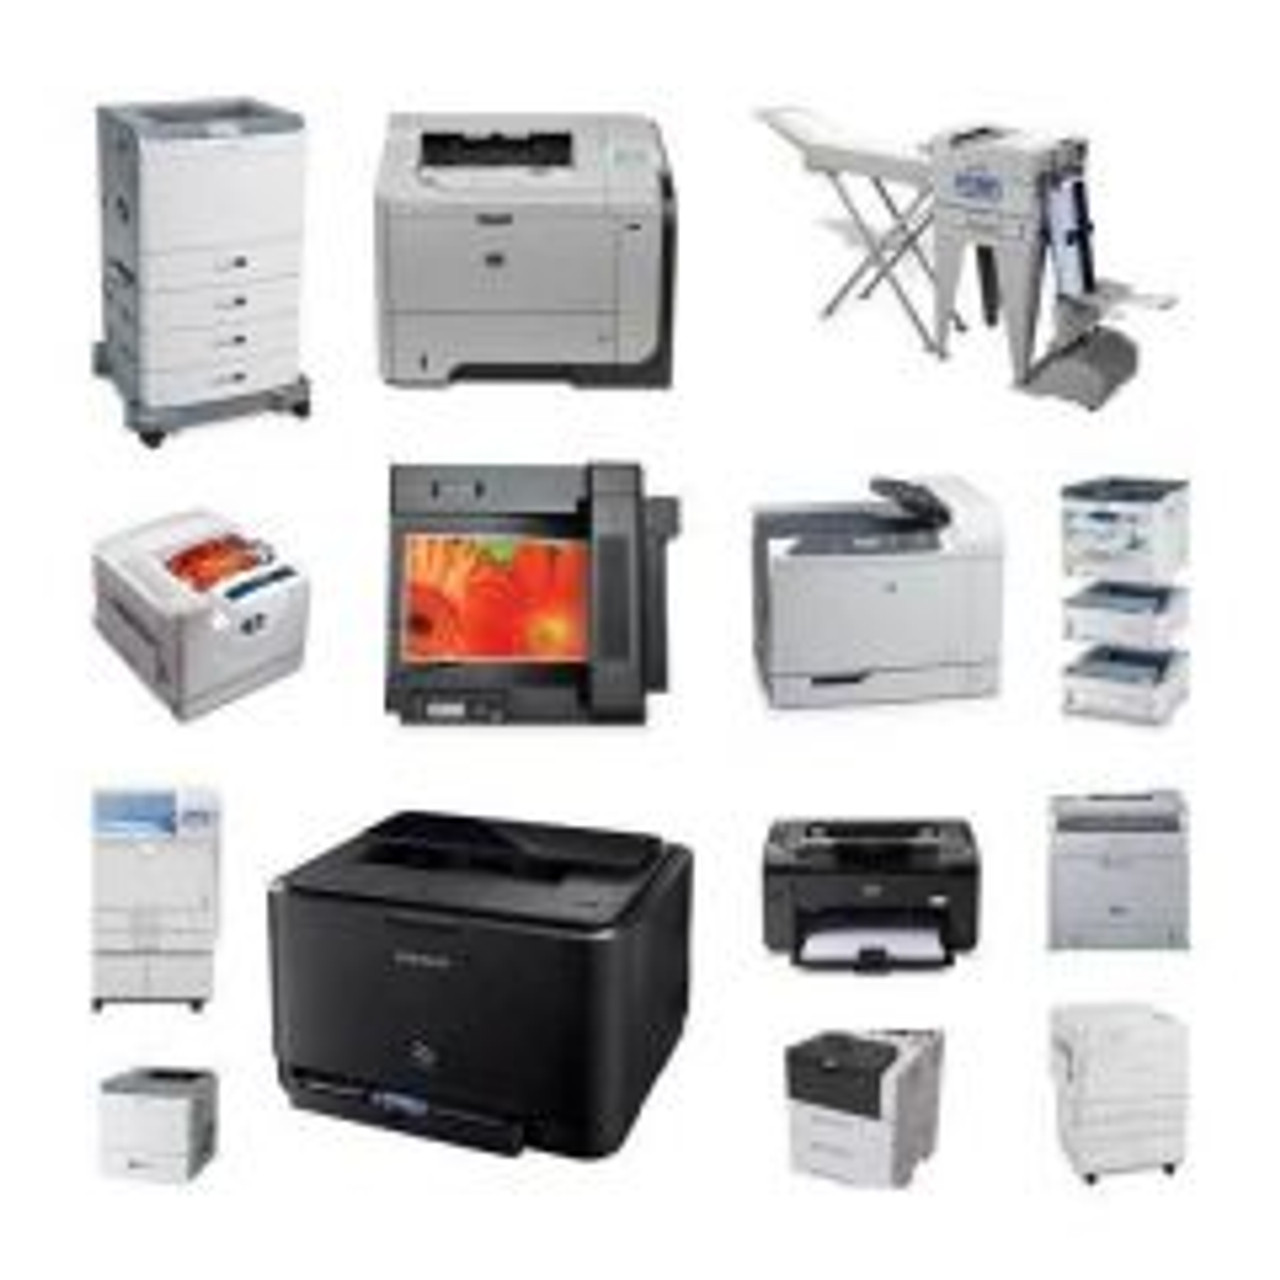 C4254A | HP | LaserJet 4050tn B/W Laser Printer 17-ppm 600 Sheets 1200 dpi x 1200 dpi Ethernet 10/100Base-TX